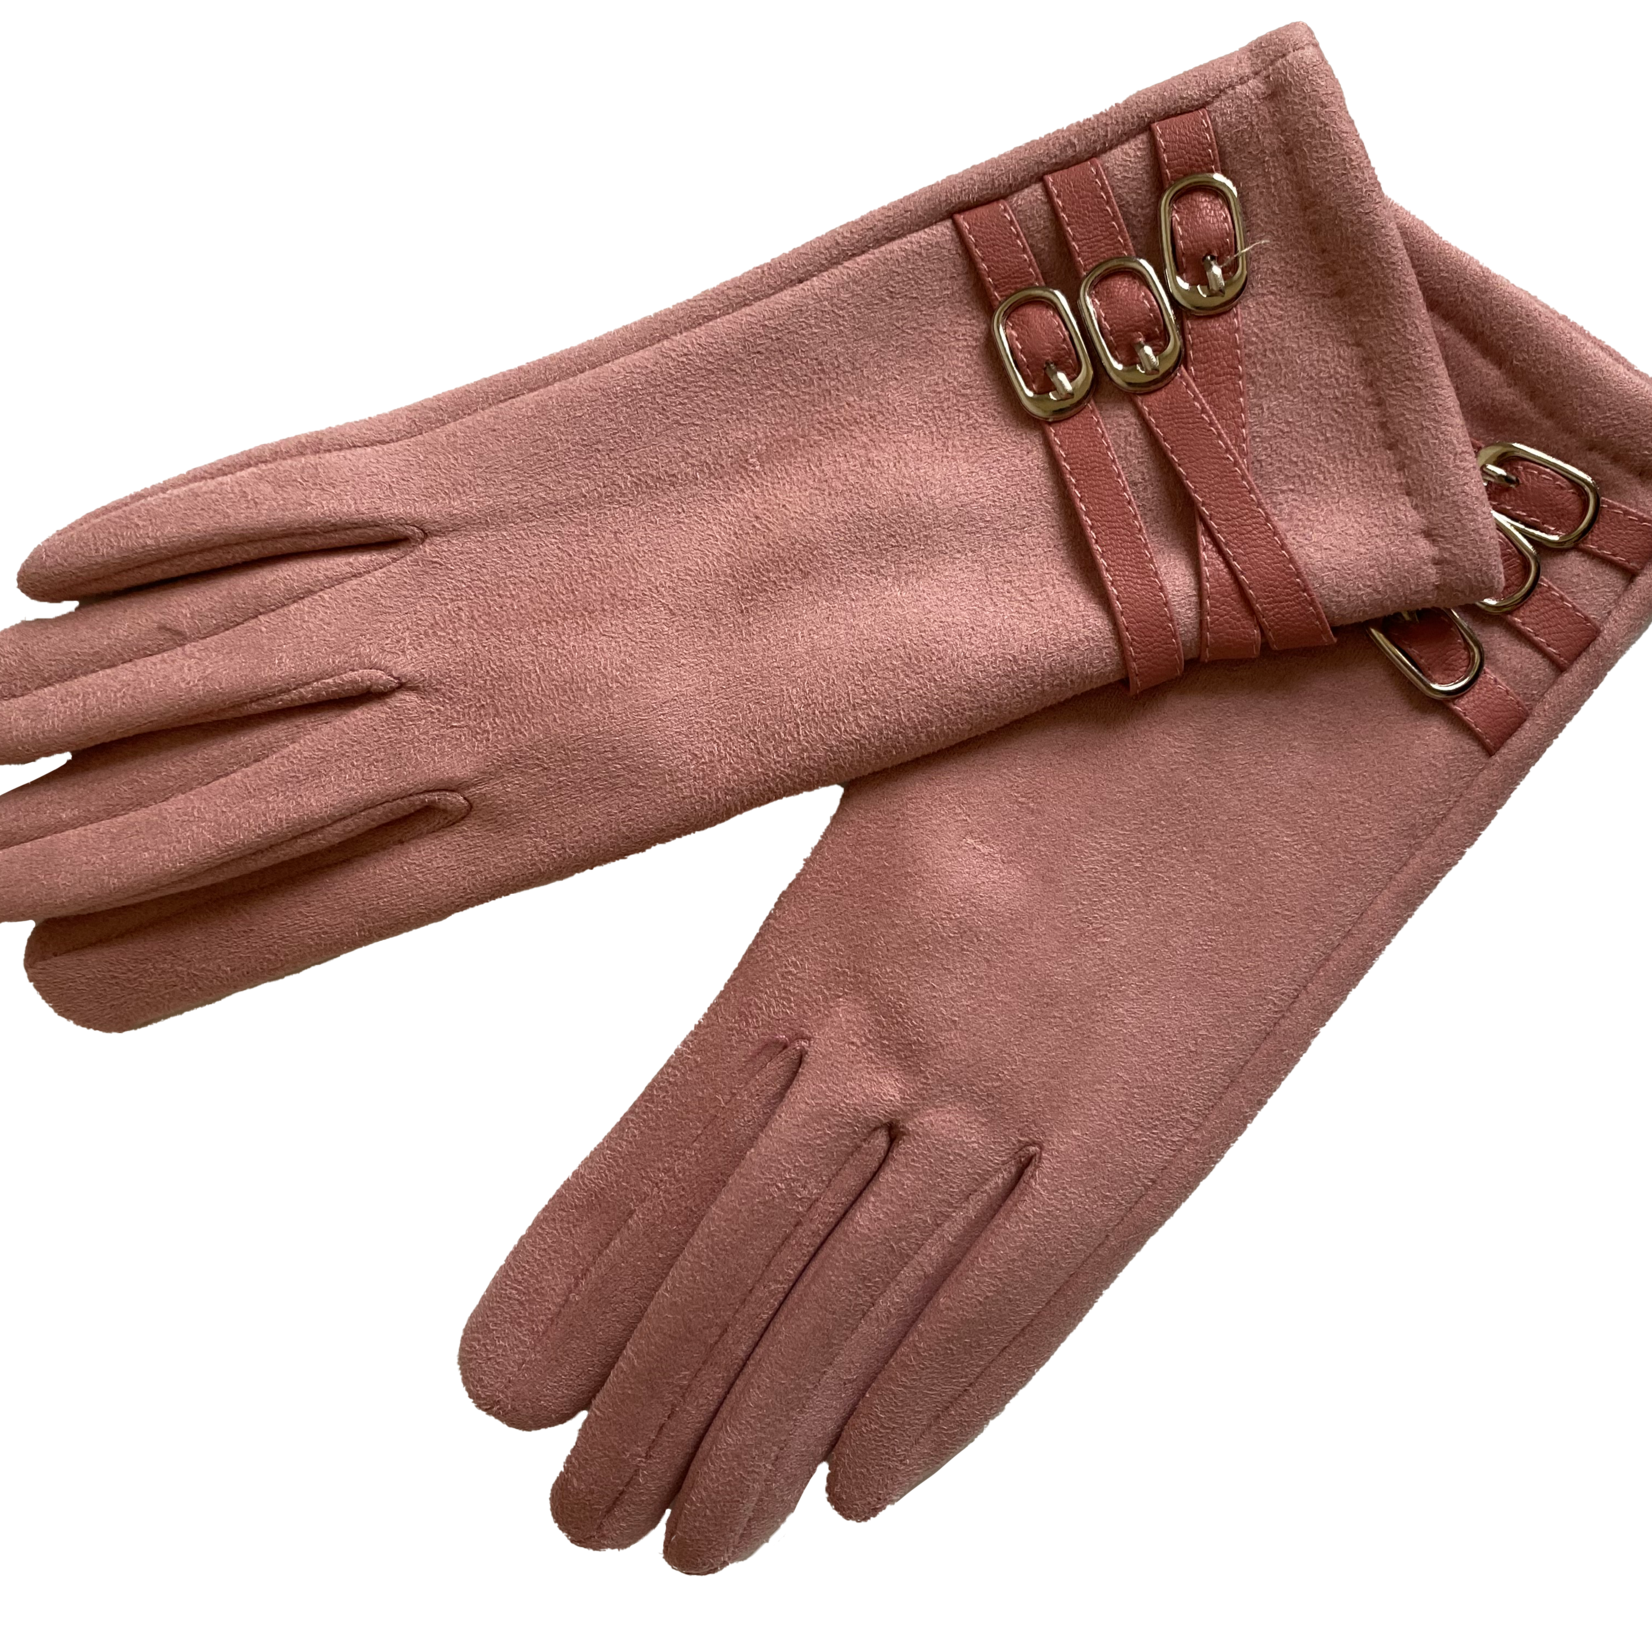 Venera Seta 3 Strap Gloves